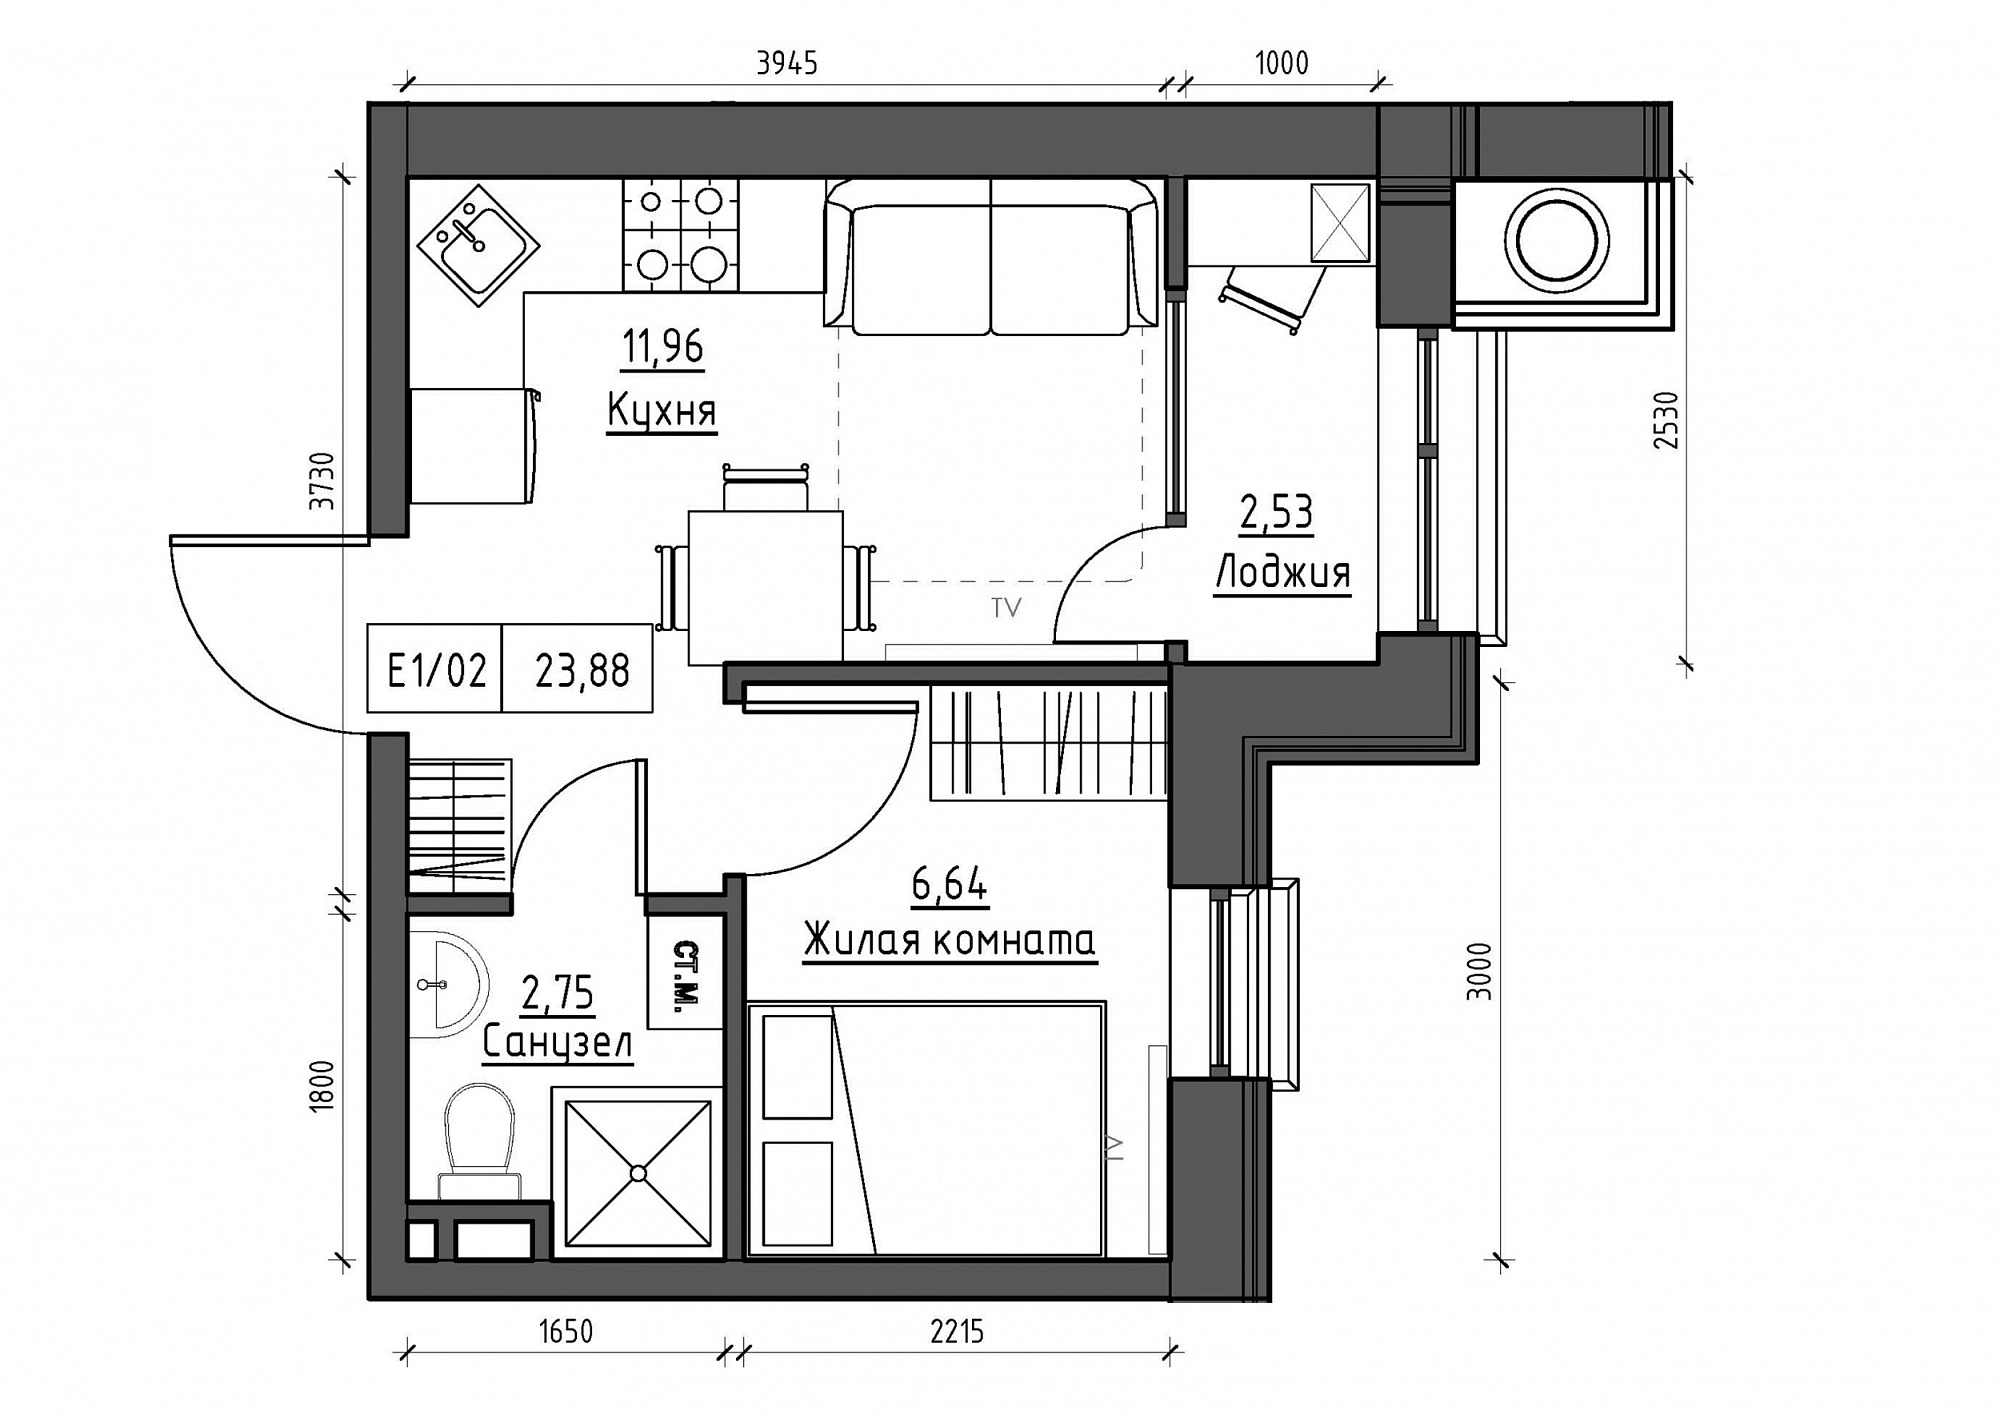 Планування 1-к квартира площею 23.88м2, KS-012-01/0015.